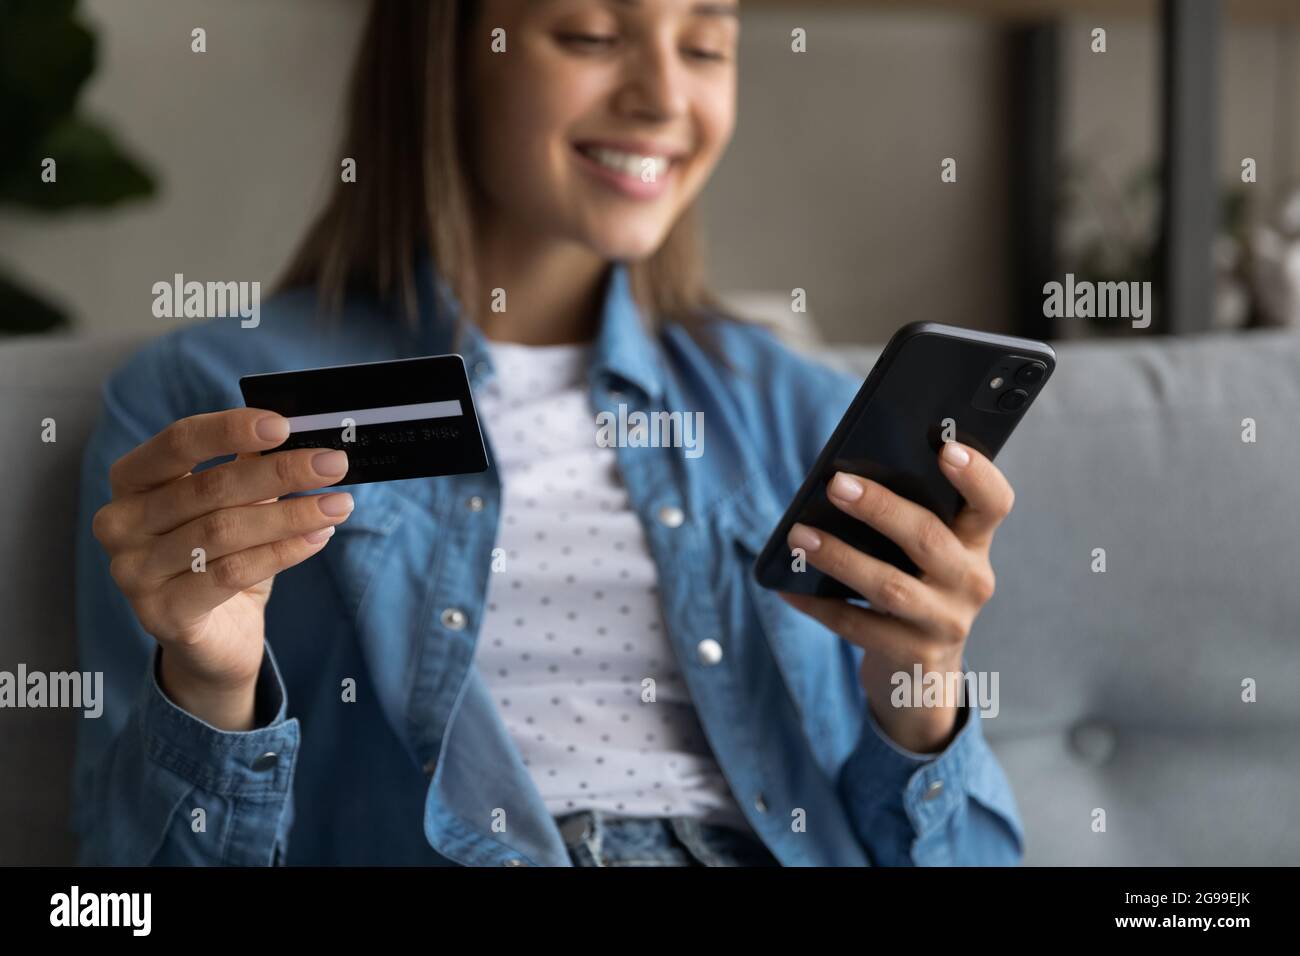 Une femme qui détient une carte de crédit et un smartphone bénéficie de services d'achat en ligne Banque D'Images